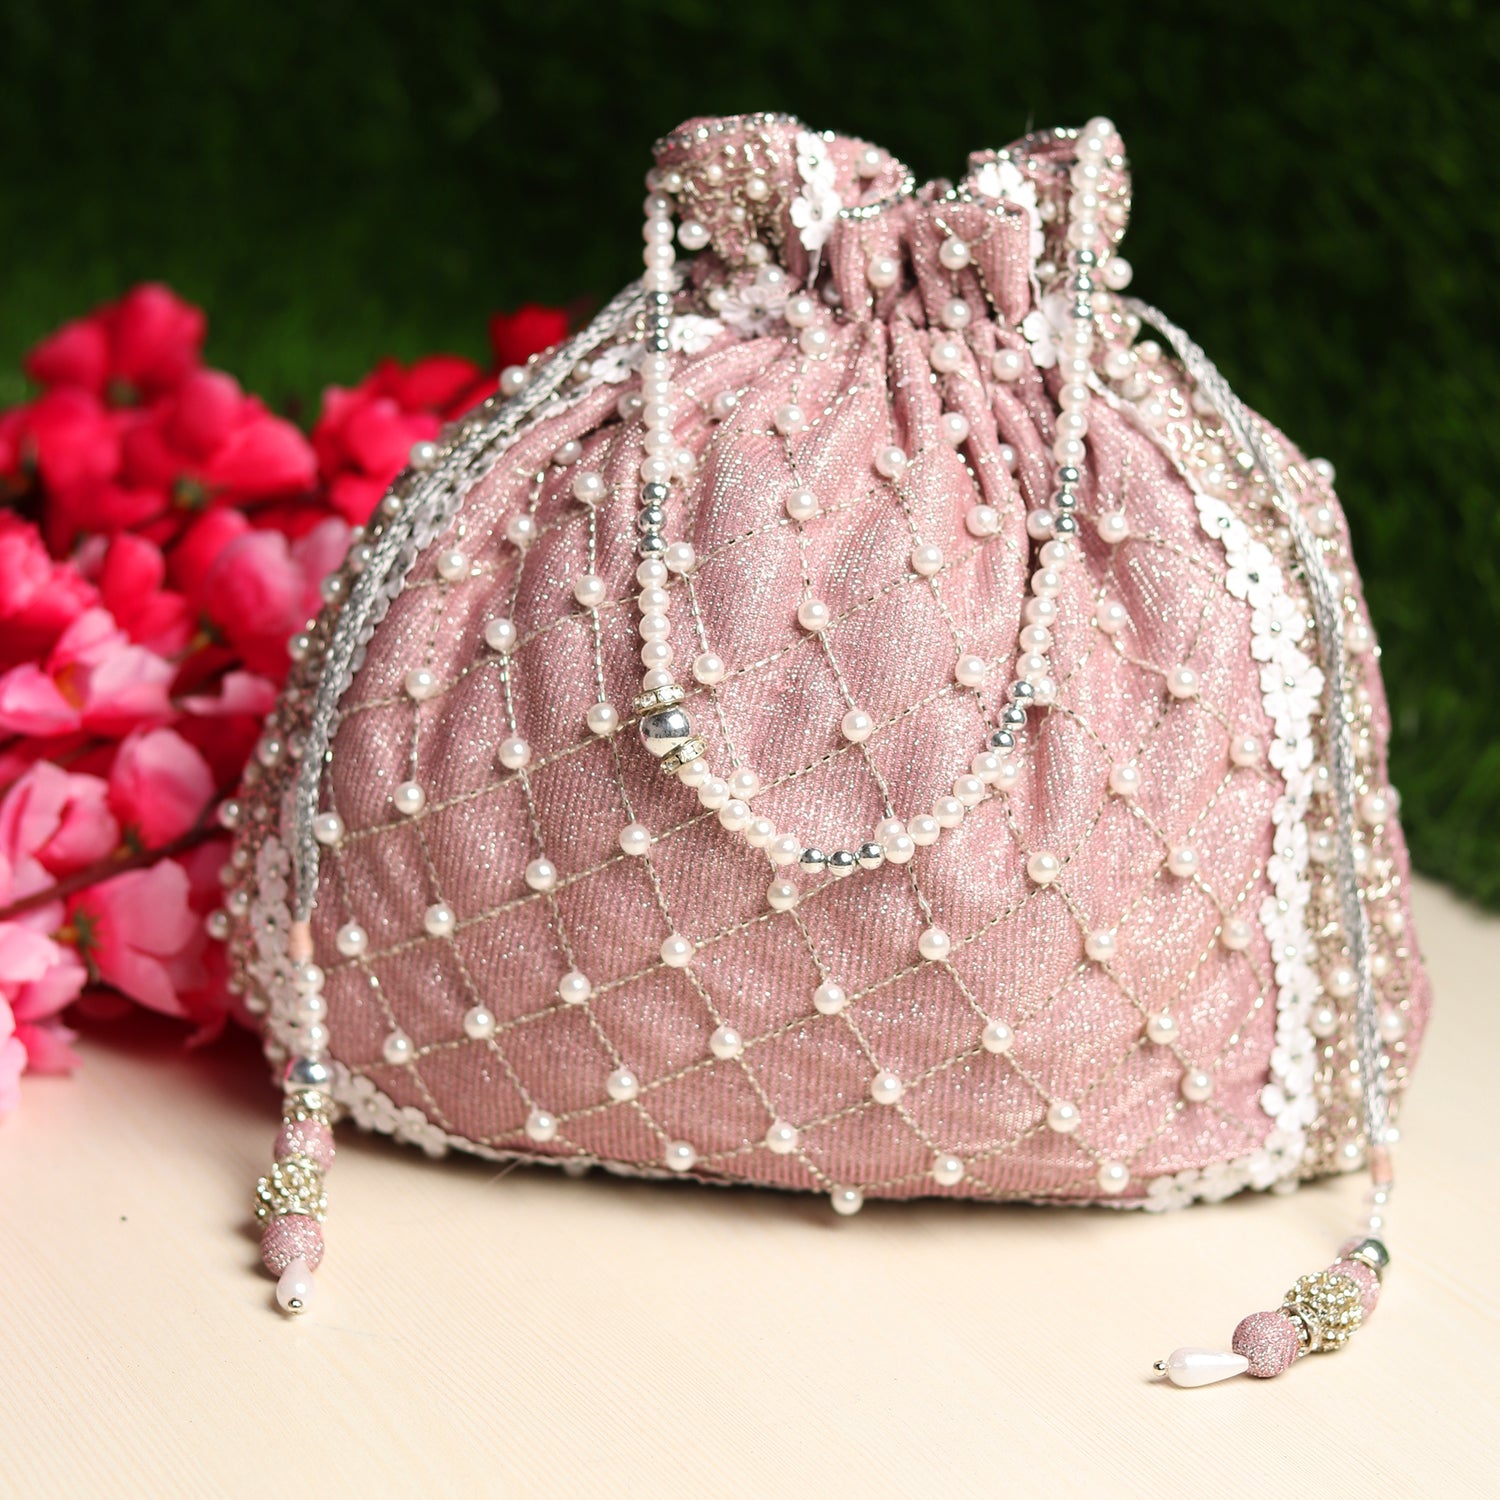 INAAYA Shimmer Crystal Studded Wedding Clutch bag: | Clutch bag wedding,  Clutch bag, Wedding clutch